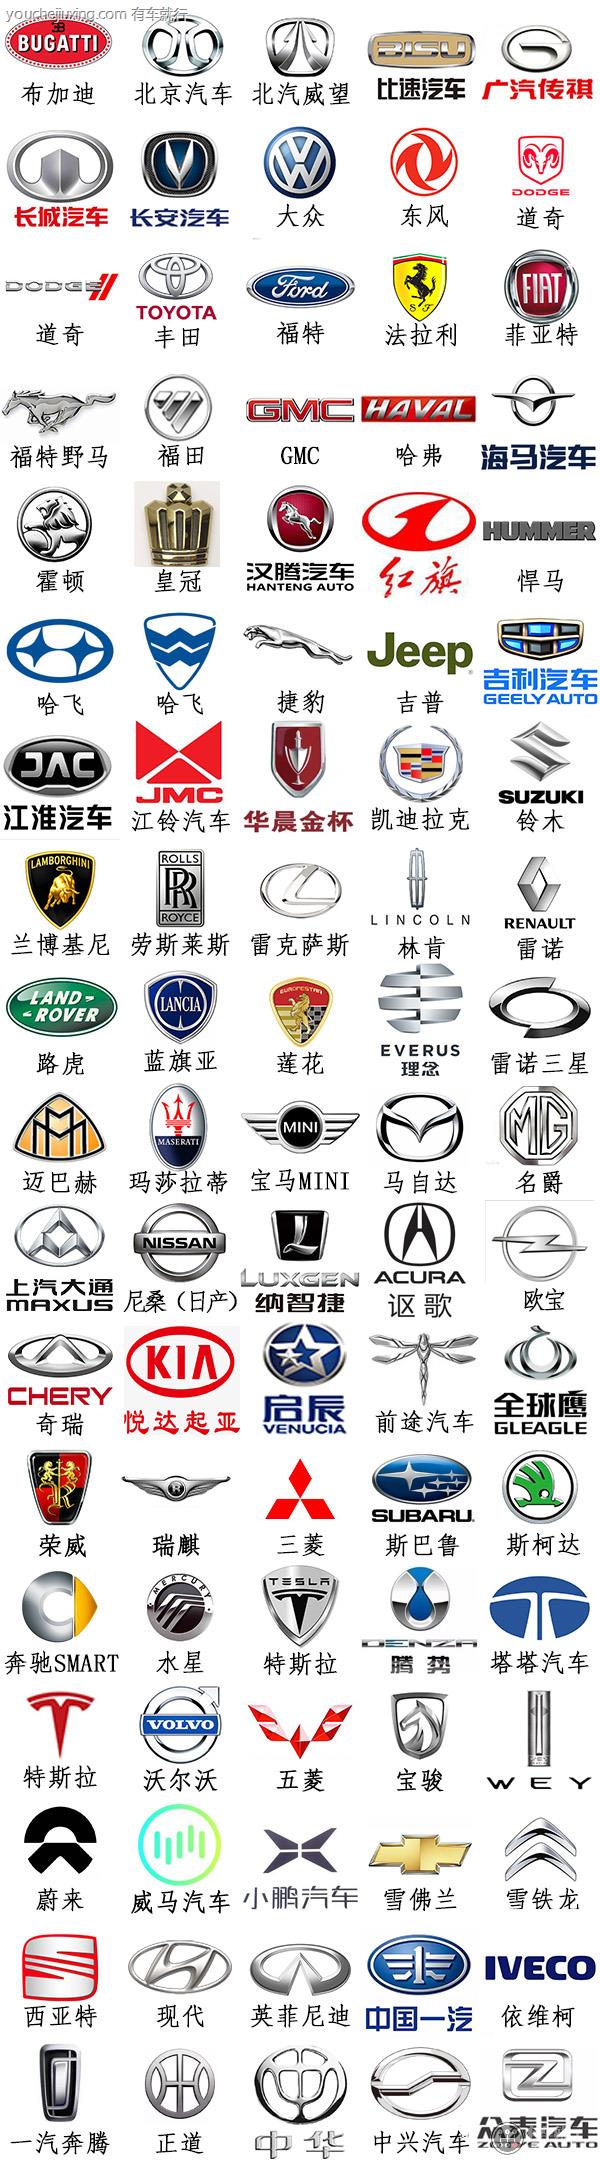 有车提示:上述车标只是一小部分汽车品牌及其标志,每个品牌都有自己